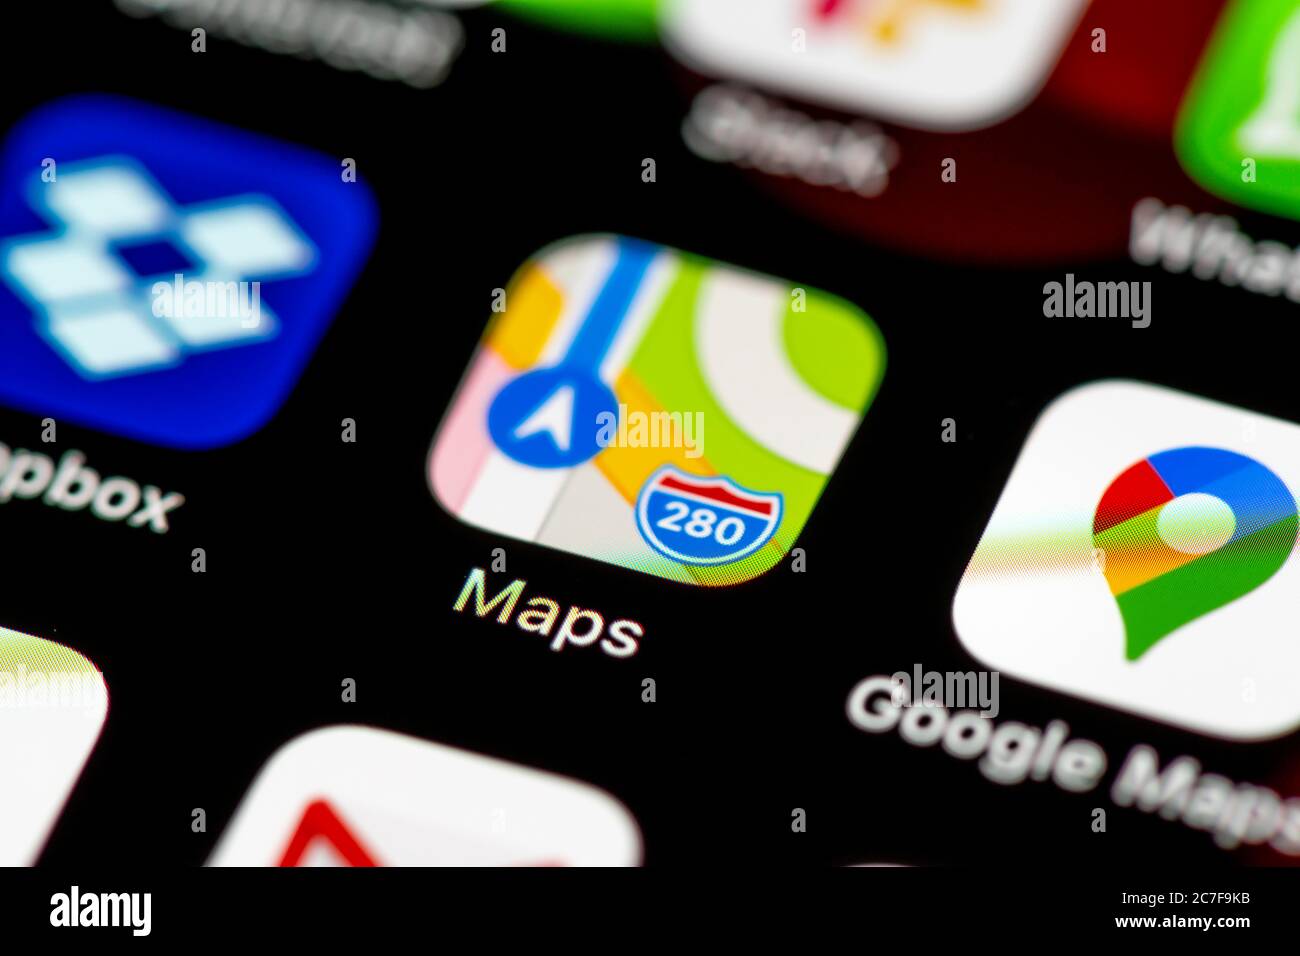 Icône Apple Maps et Google Maps, icônes d'application sur un écran de téléphone mobile, iPhone, smartphone, gros plan Banque D'Images